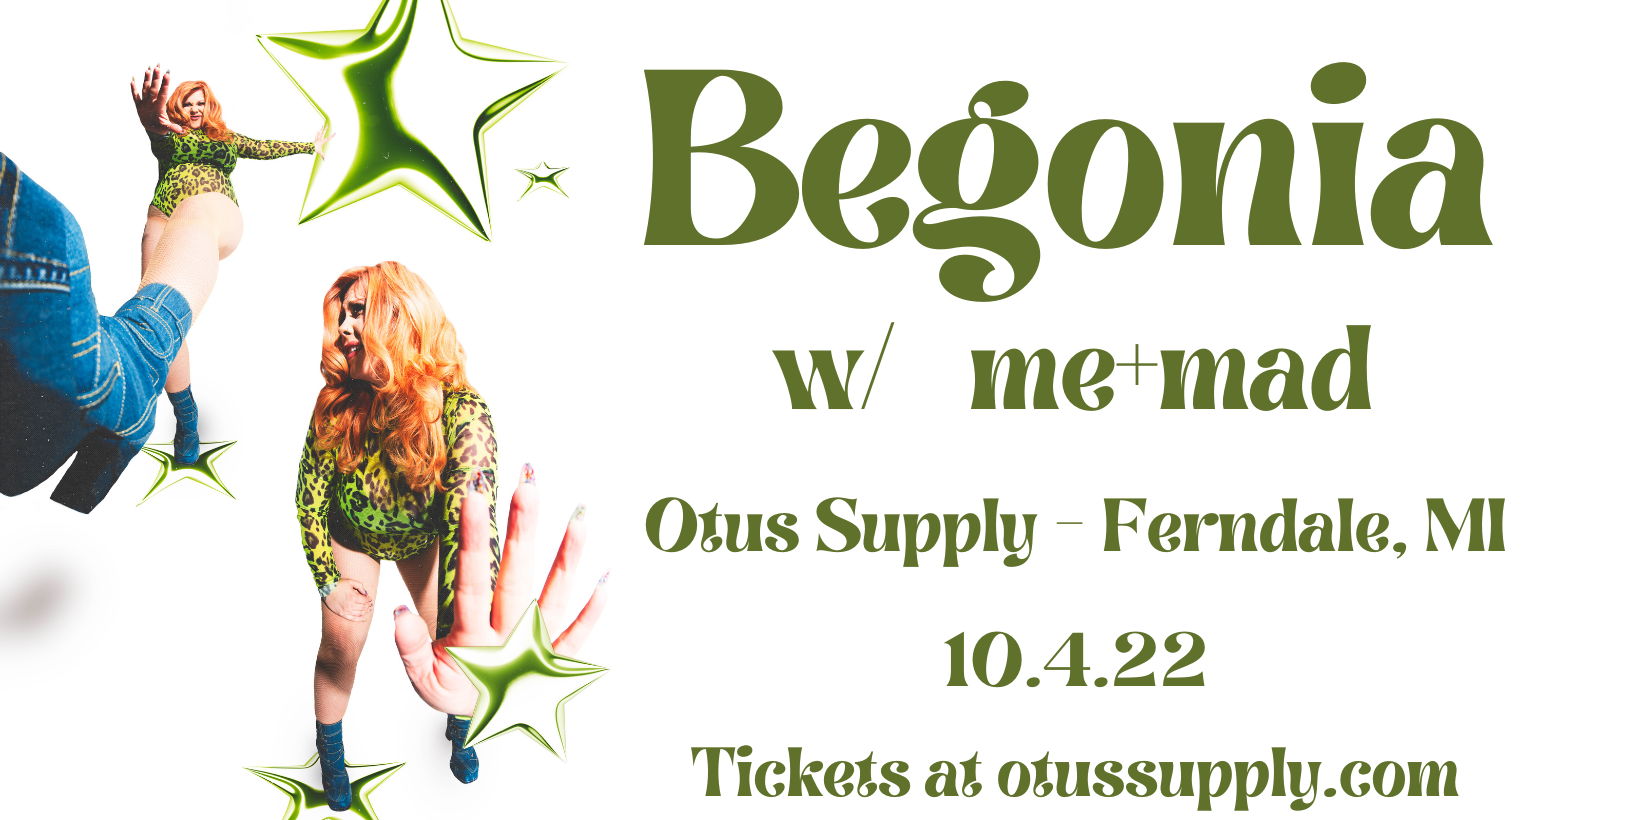 Begonia | wsg me+mad | Otus Supply | Ferndale, MI promotional image